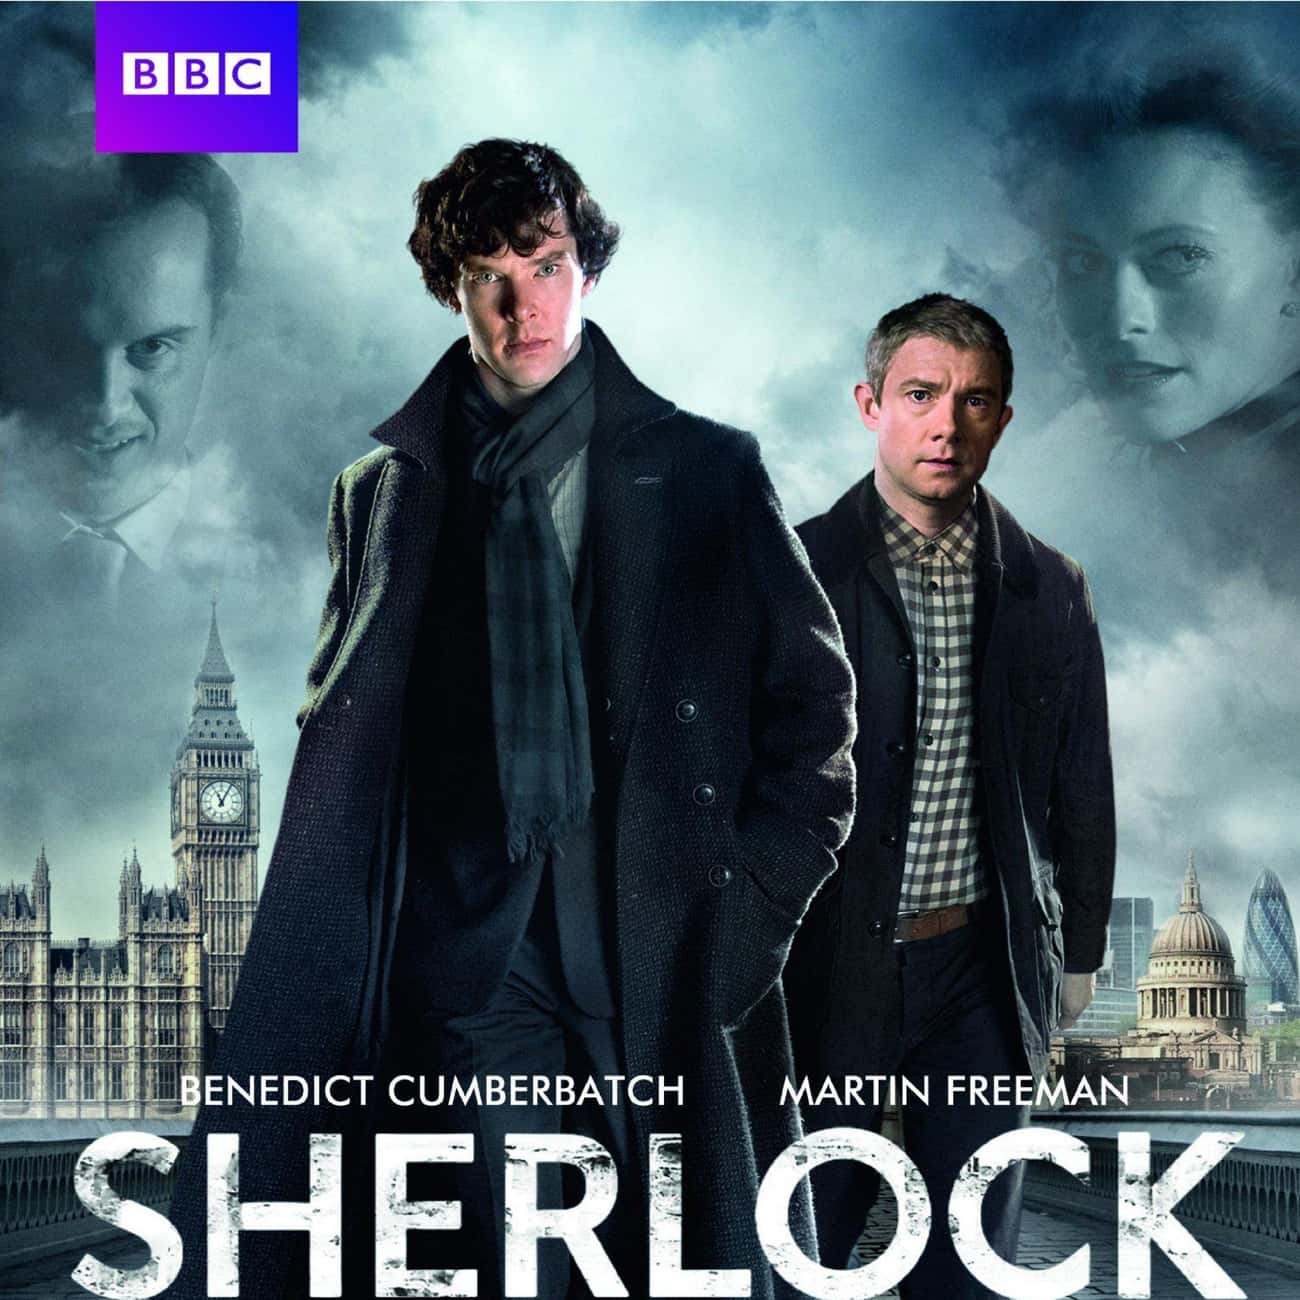 Sherlock - Season 2